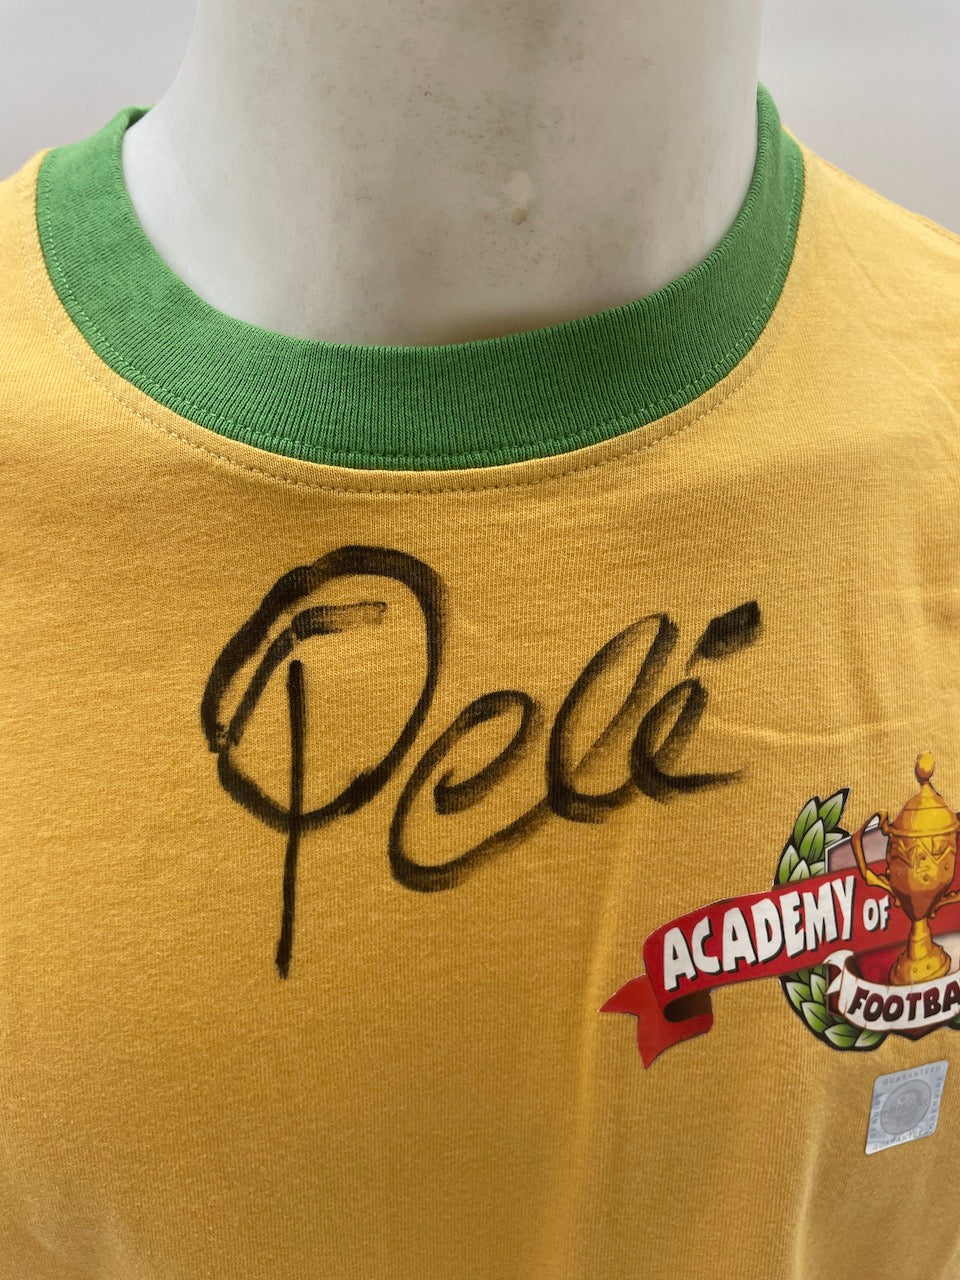 Academy of Champions Shirt Pele signiert Neu Unterschrift Autogramm COA L